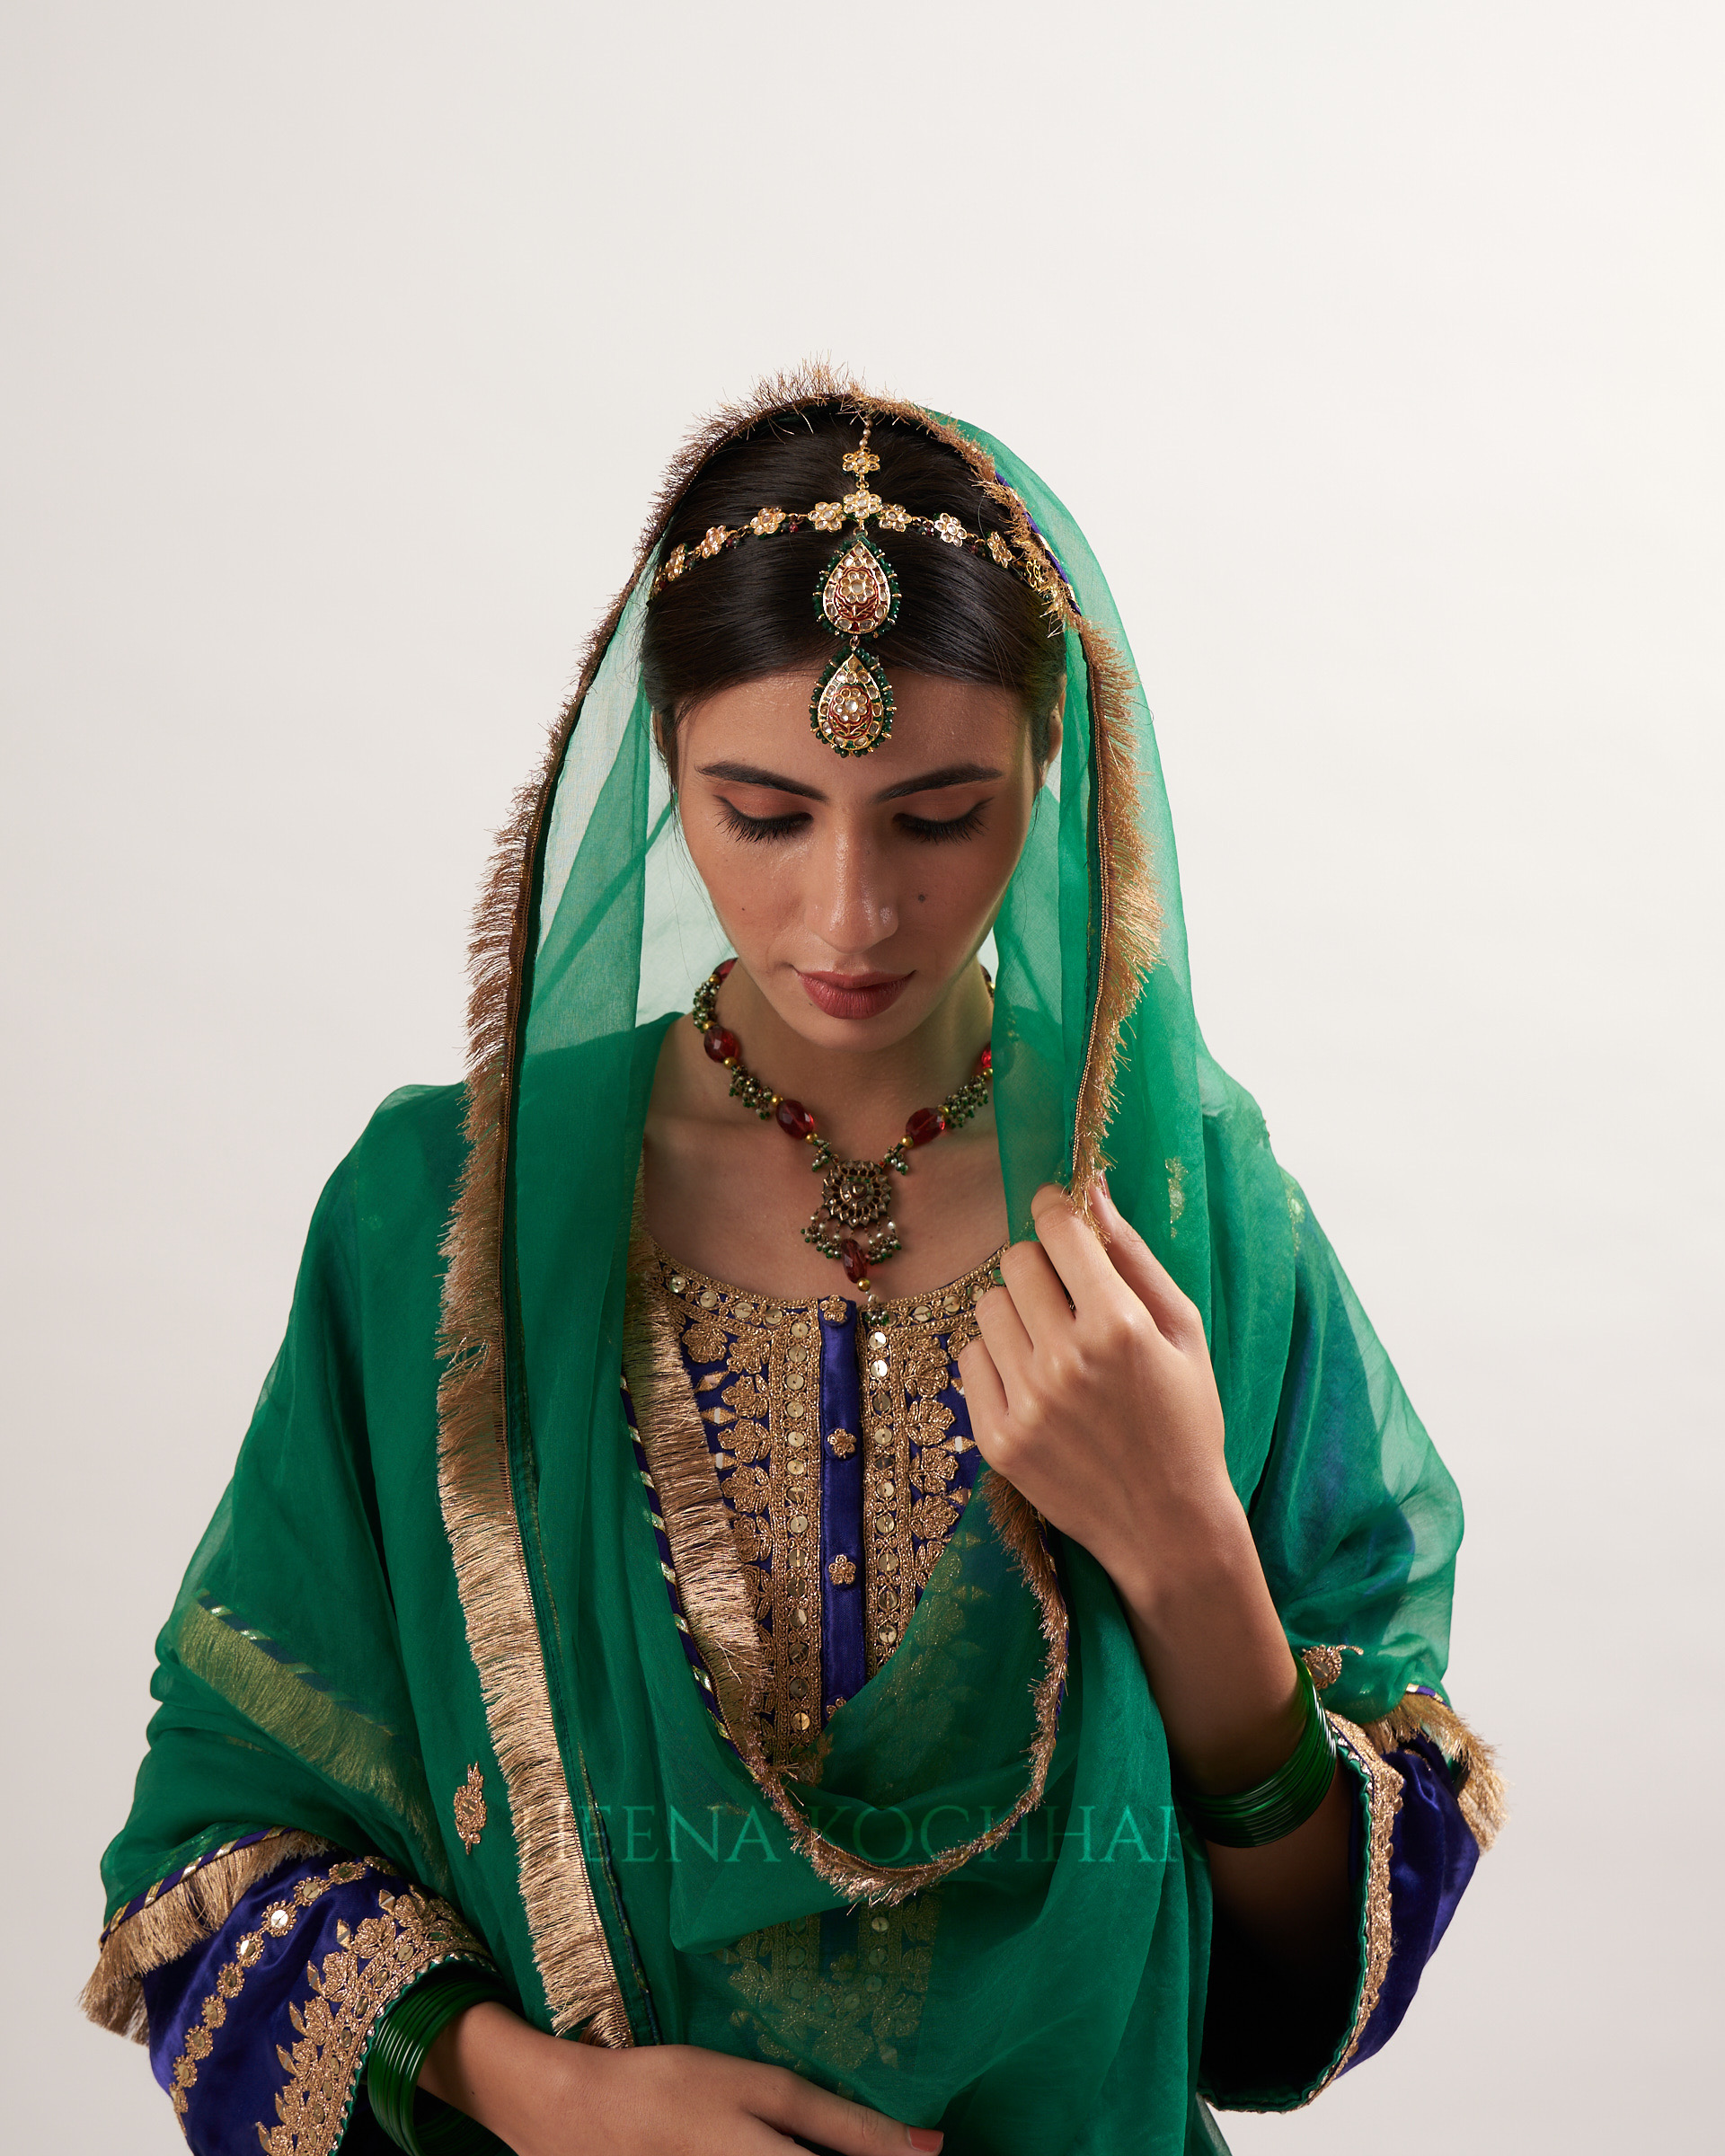 Sultana - Heena Kochhar